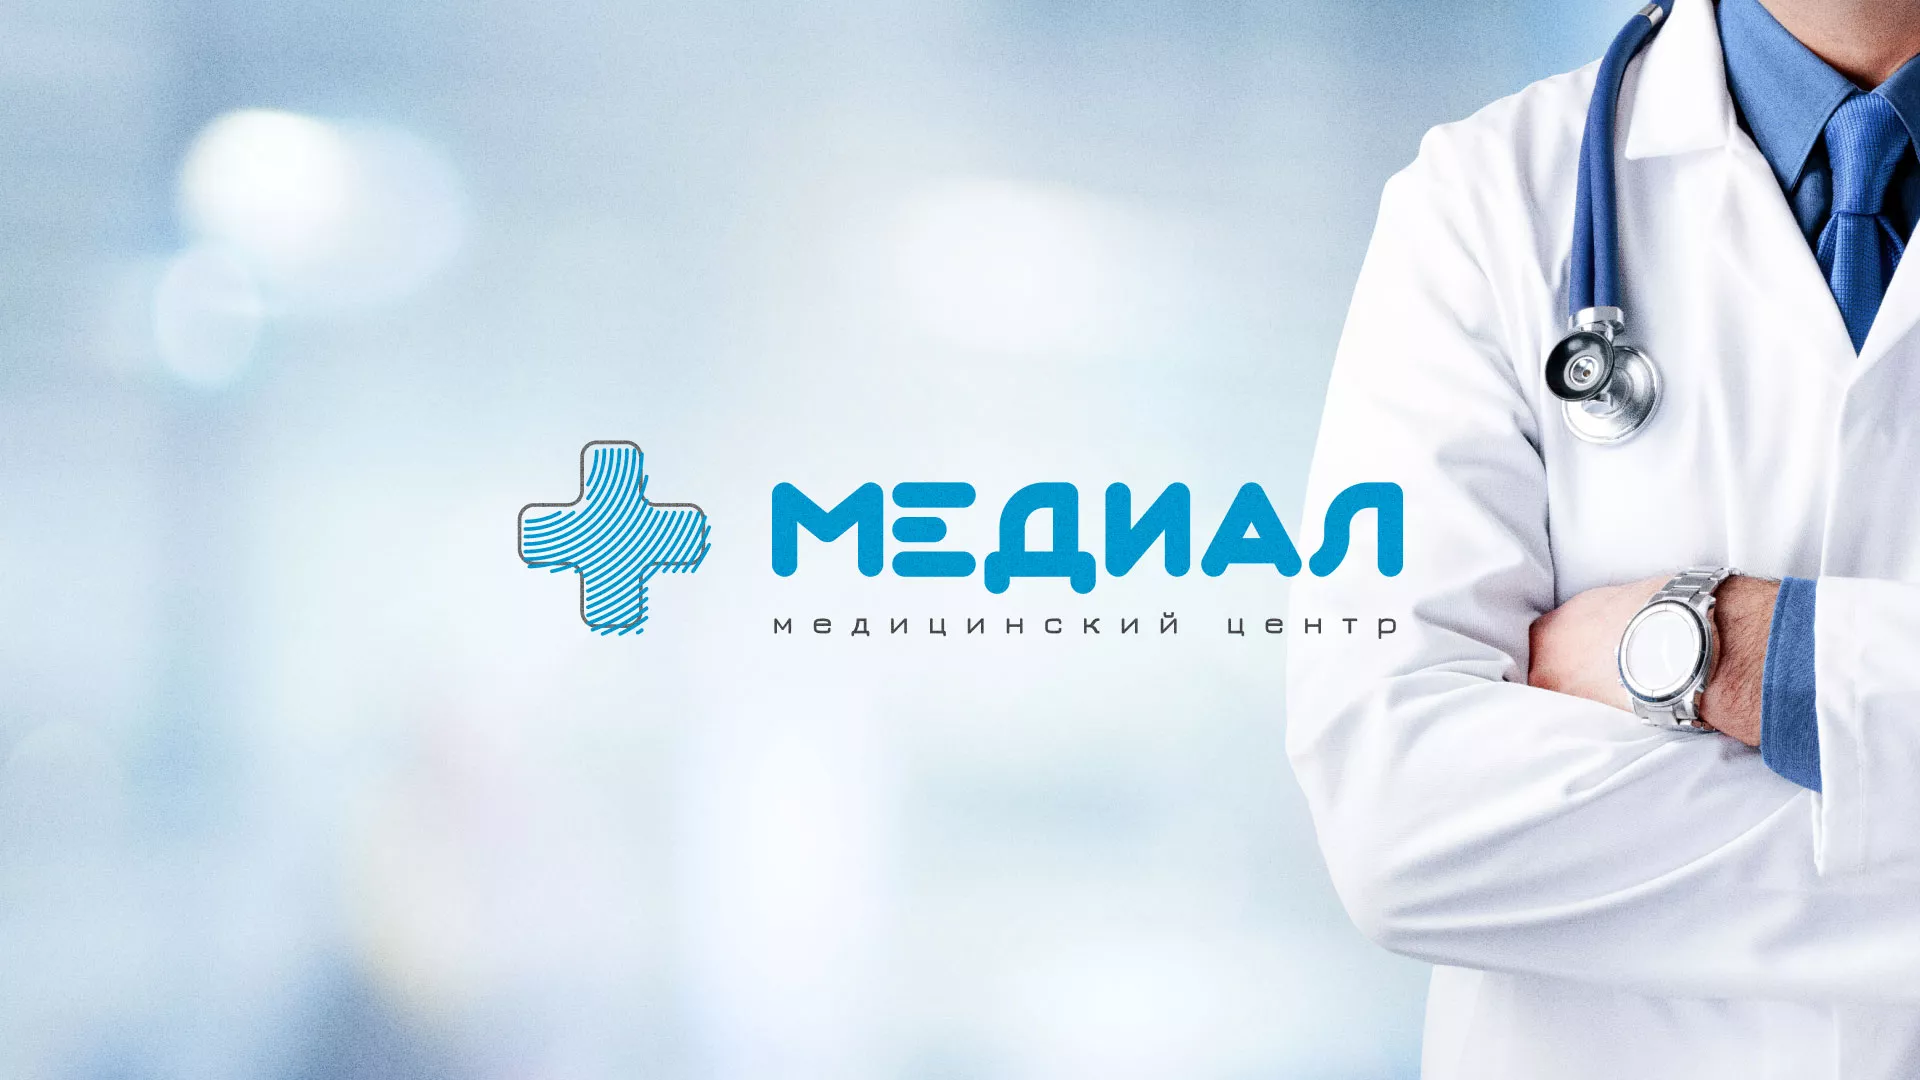 Создание сайта для медицинского центра «Медиал» в Липках